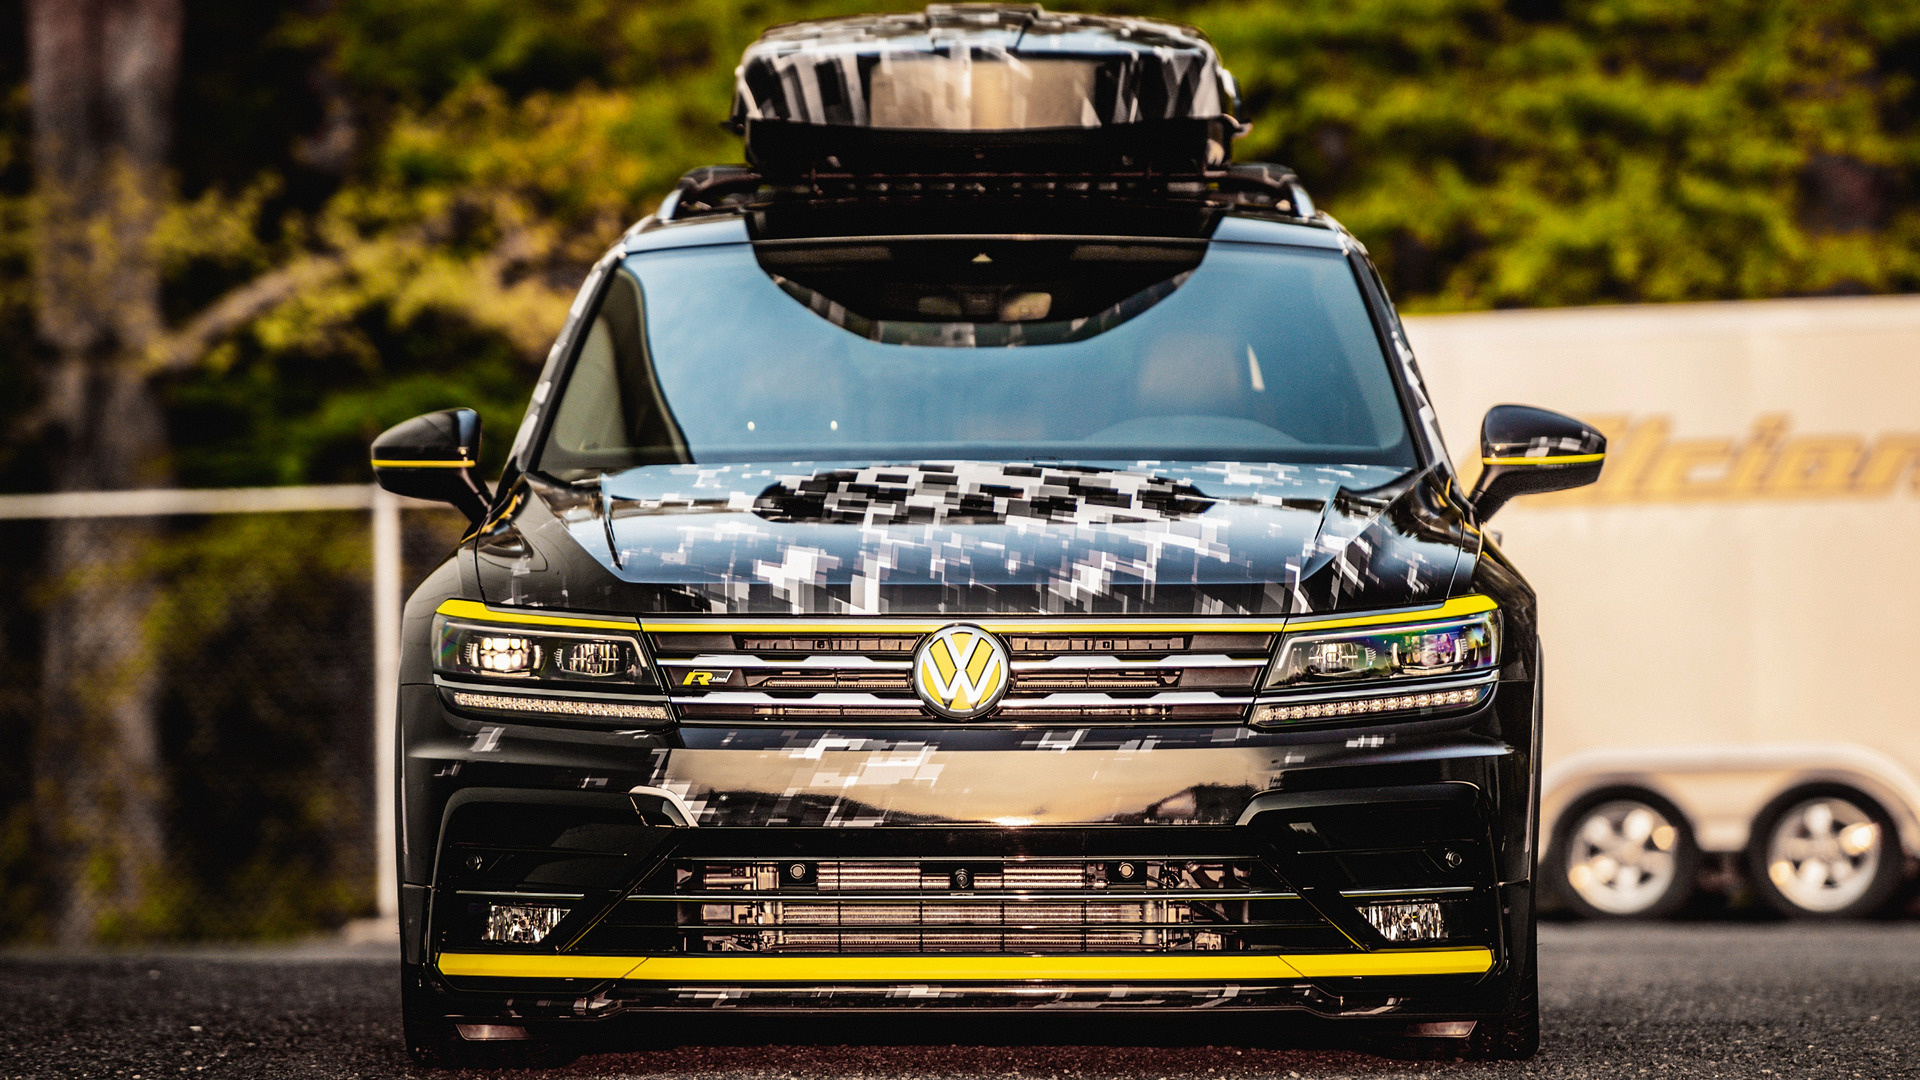 Vehicles Volkswagen Tiguan R-Line HD Wallpaper | Background Image